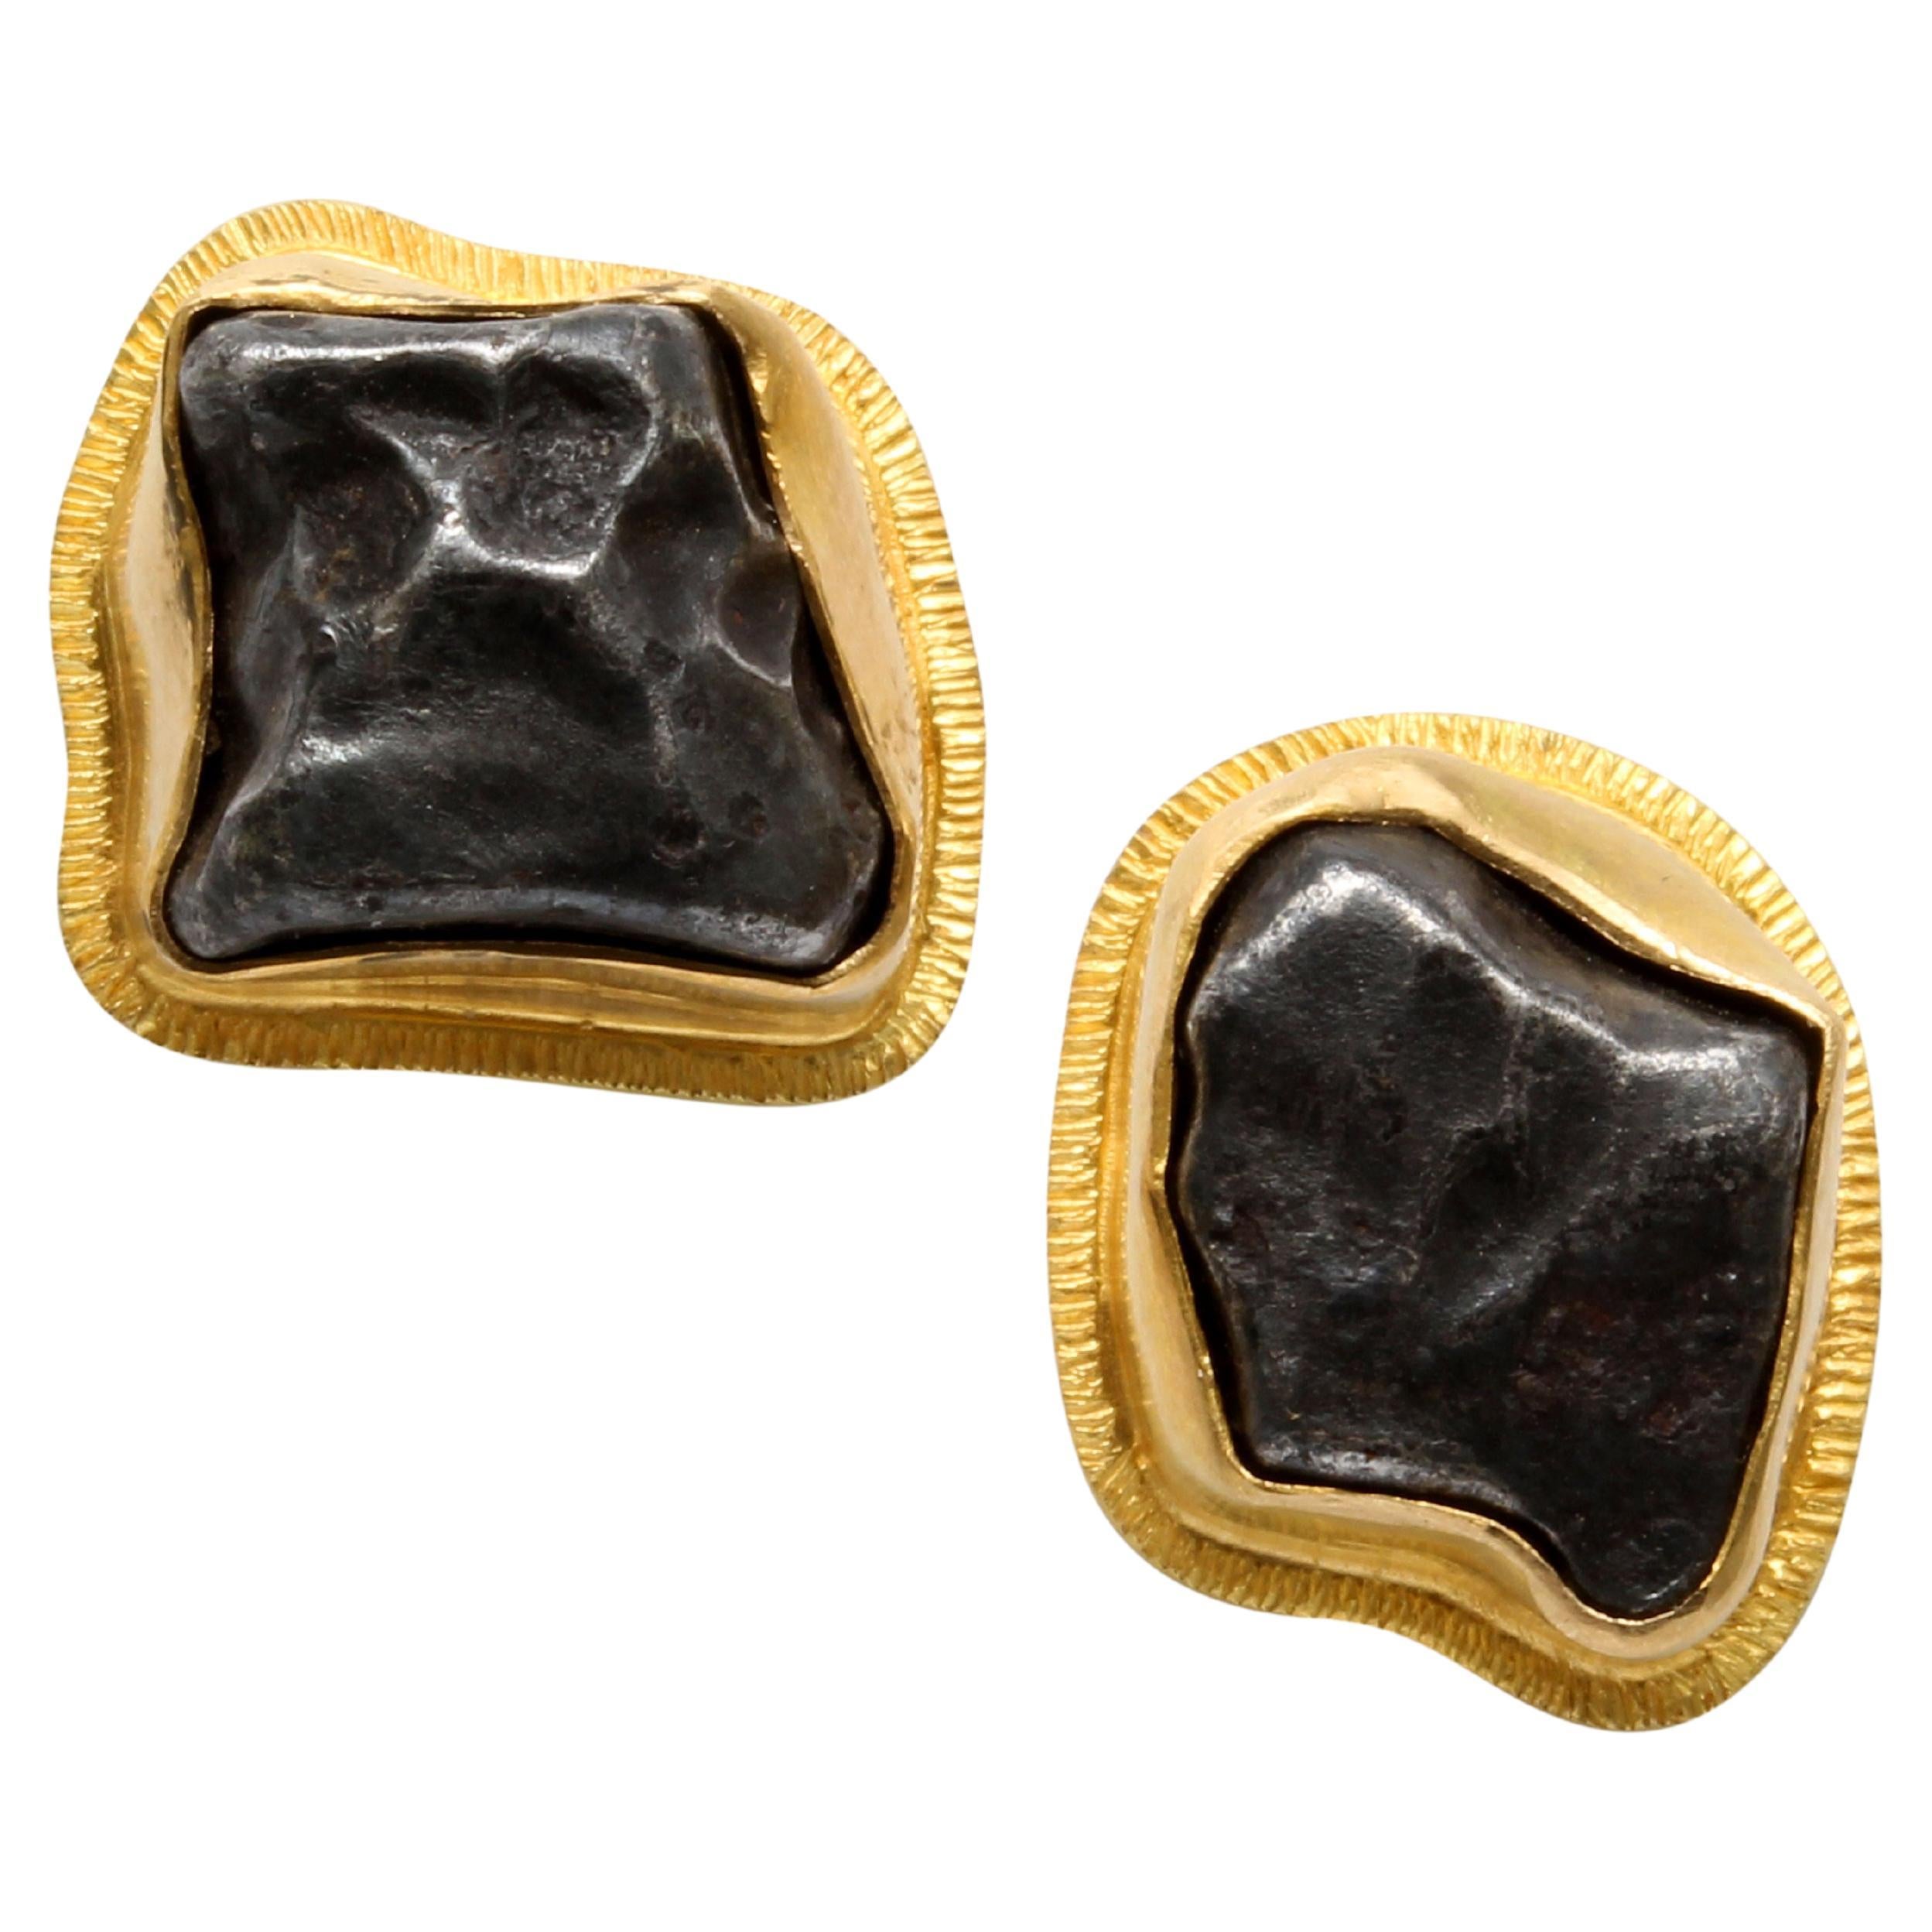 Steven Battelle Sikhote-Alin Meteorite 18K Gold Post Earrings